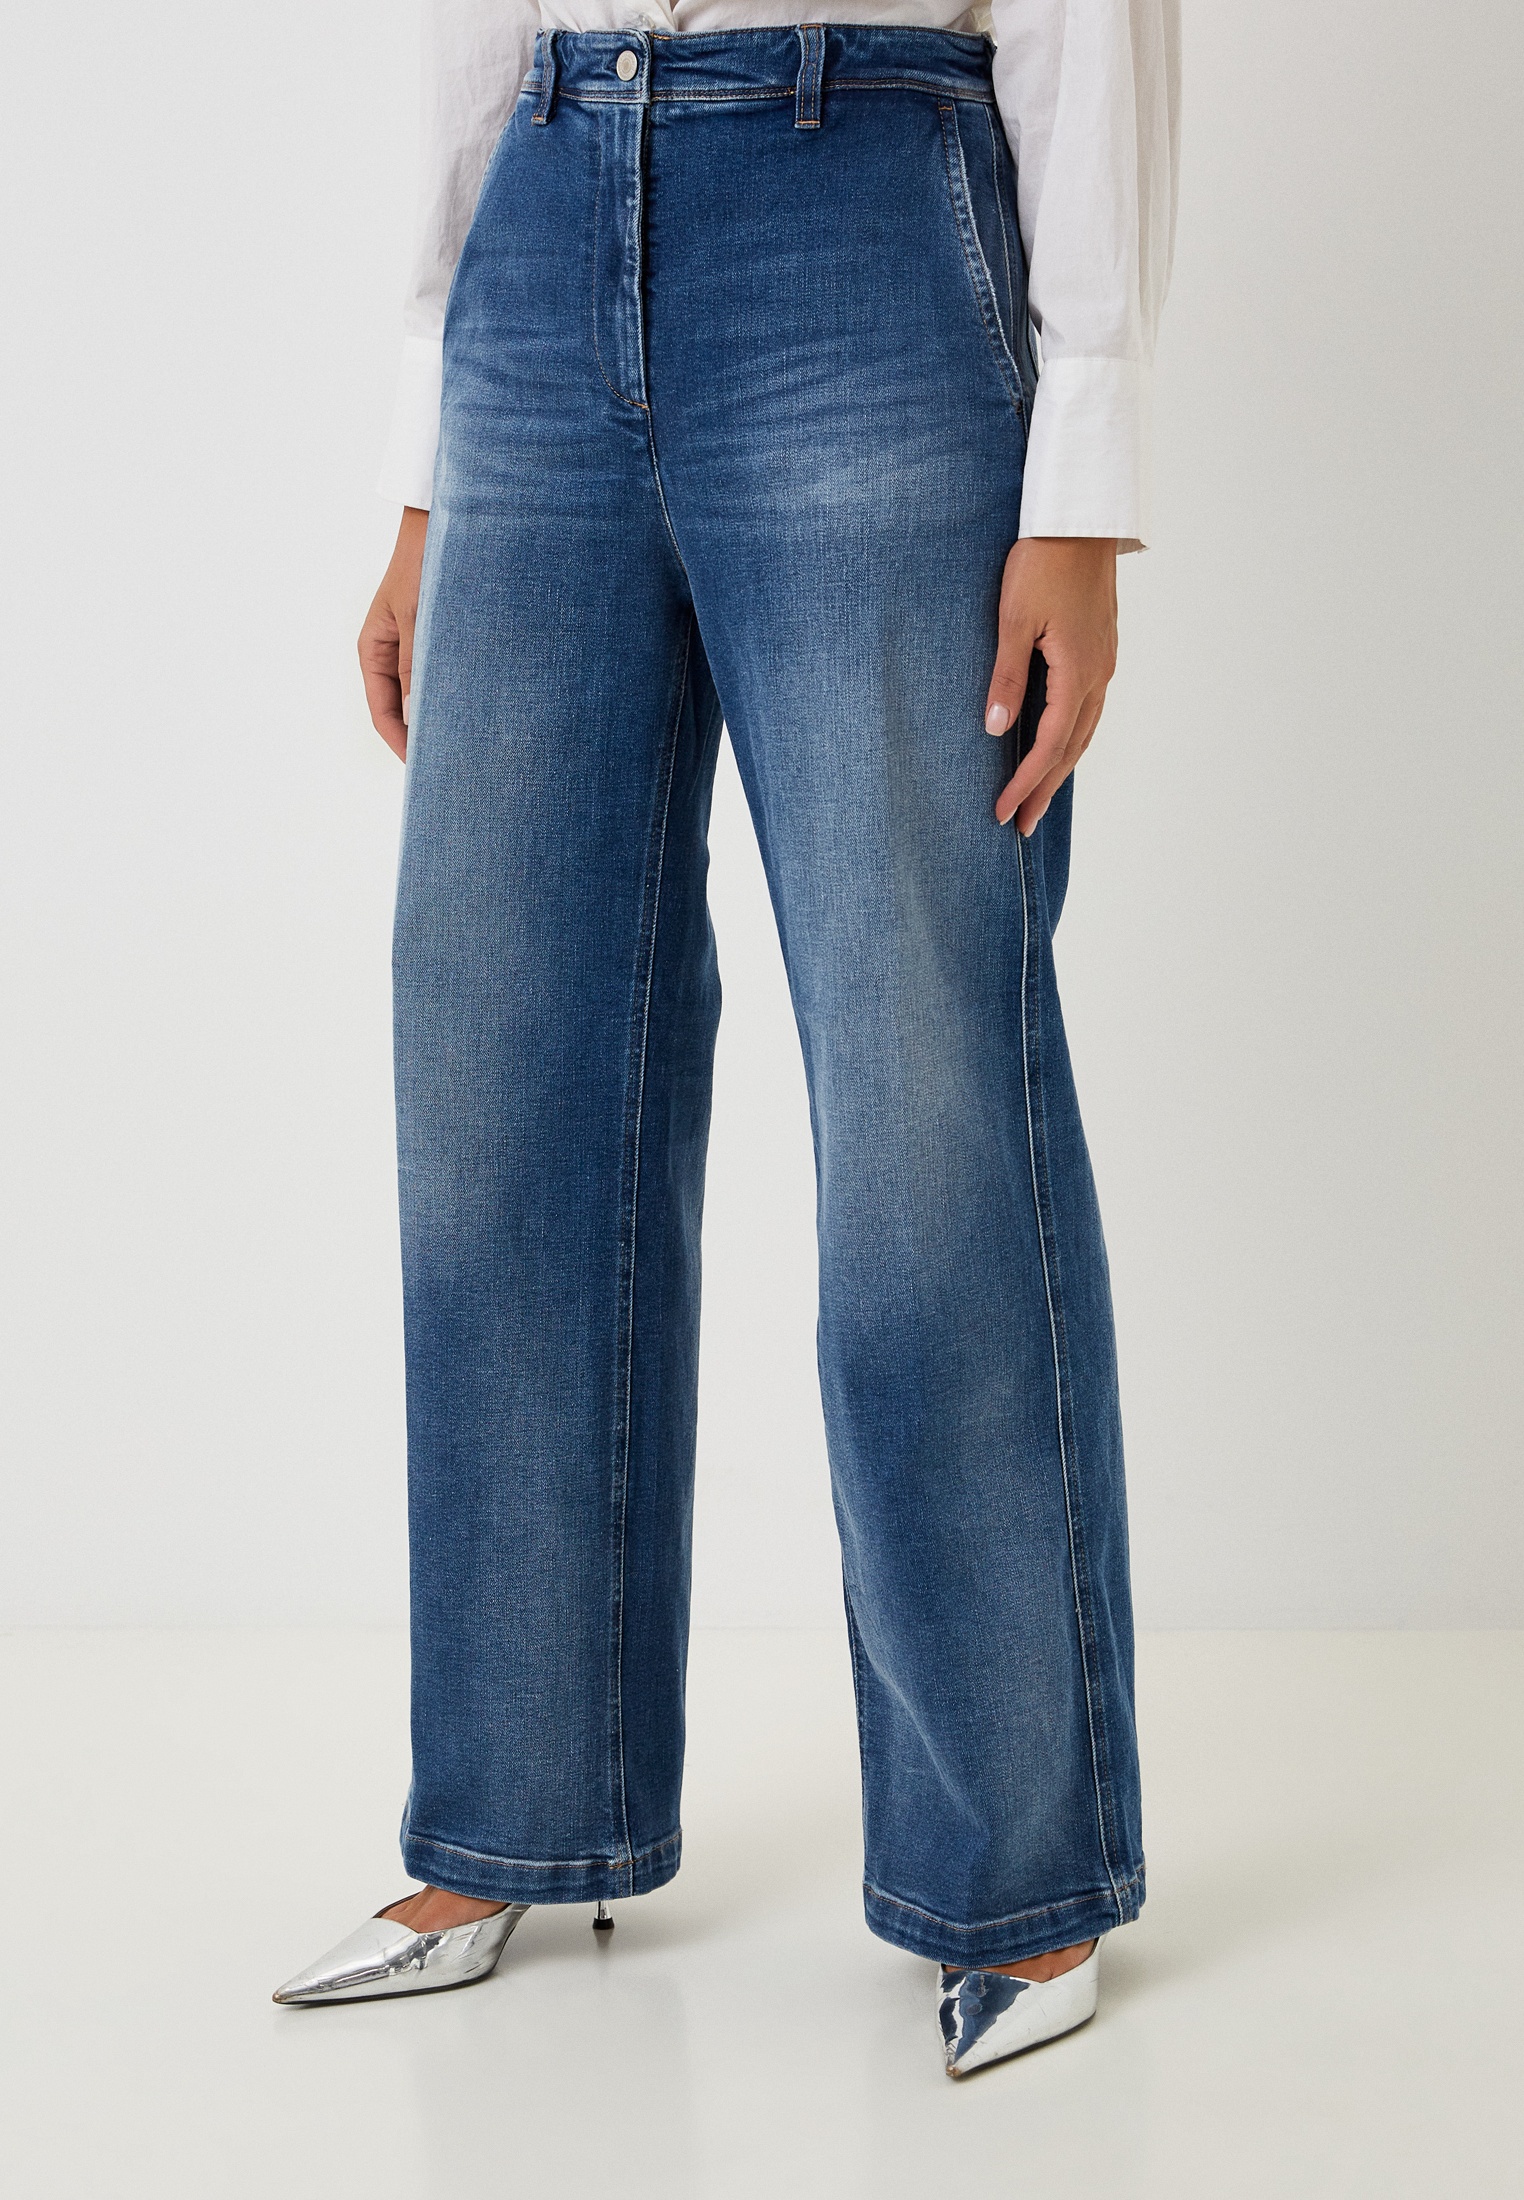 Широкие и расклешенные джинсы Replay (Реплей) W8149 .000.757 561